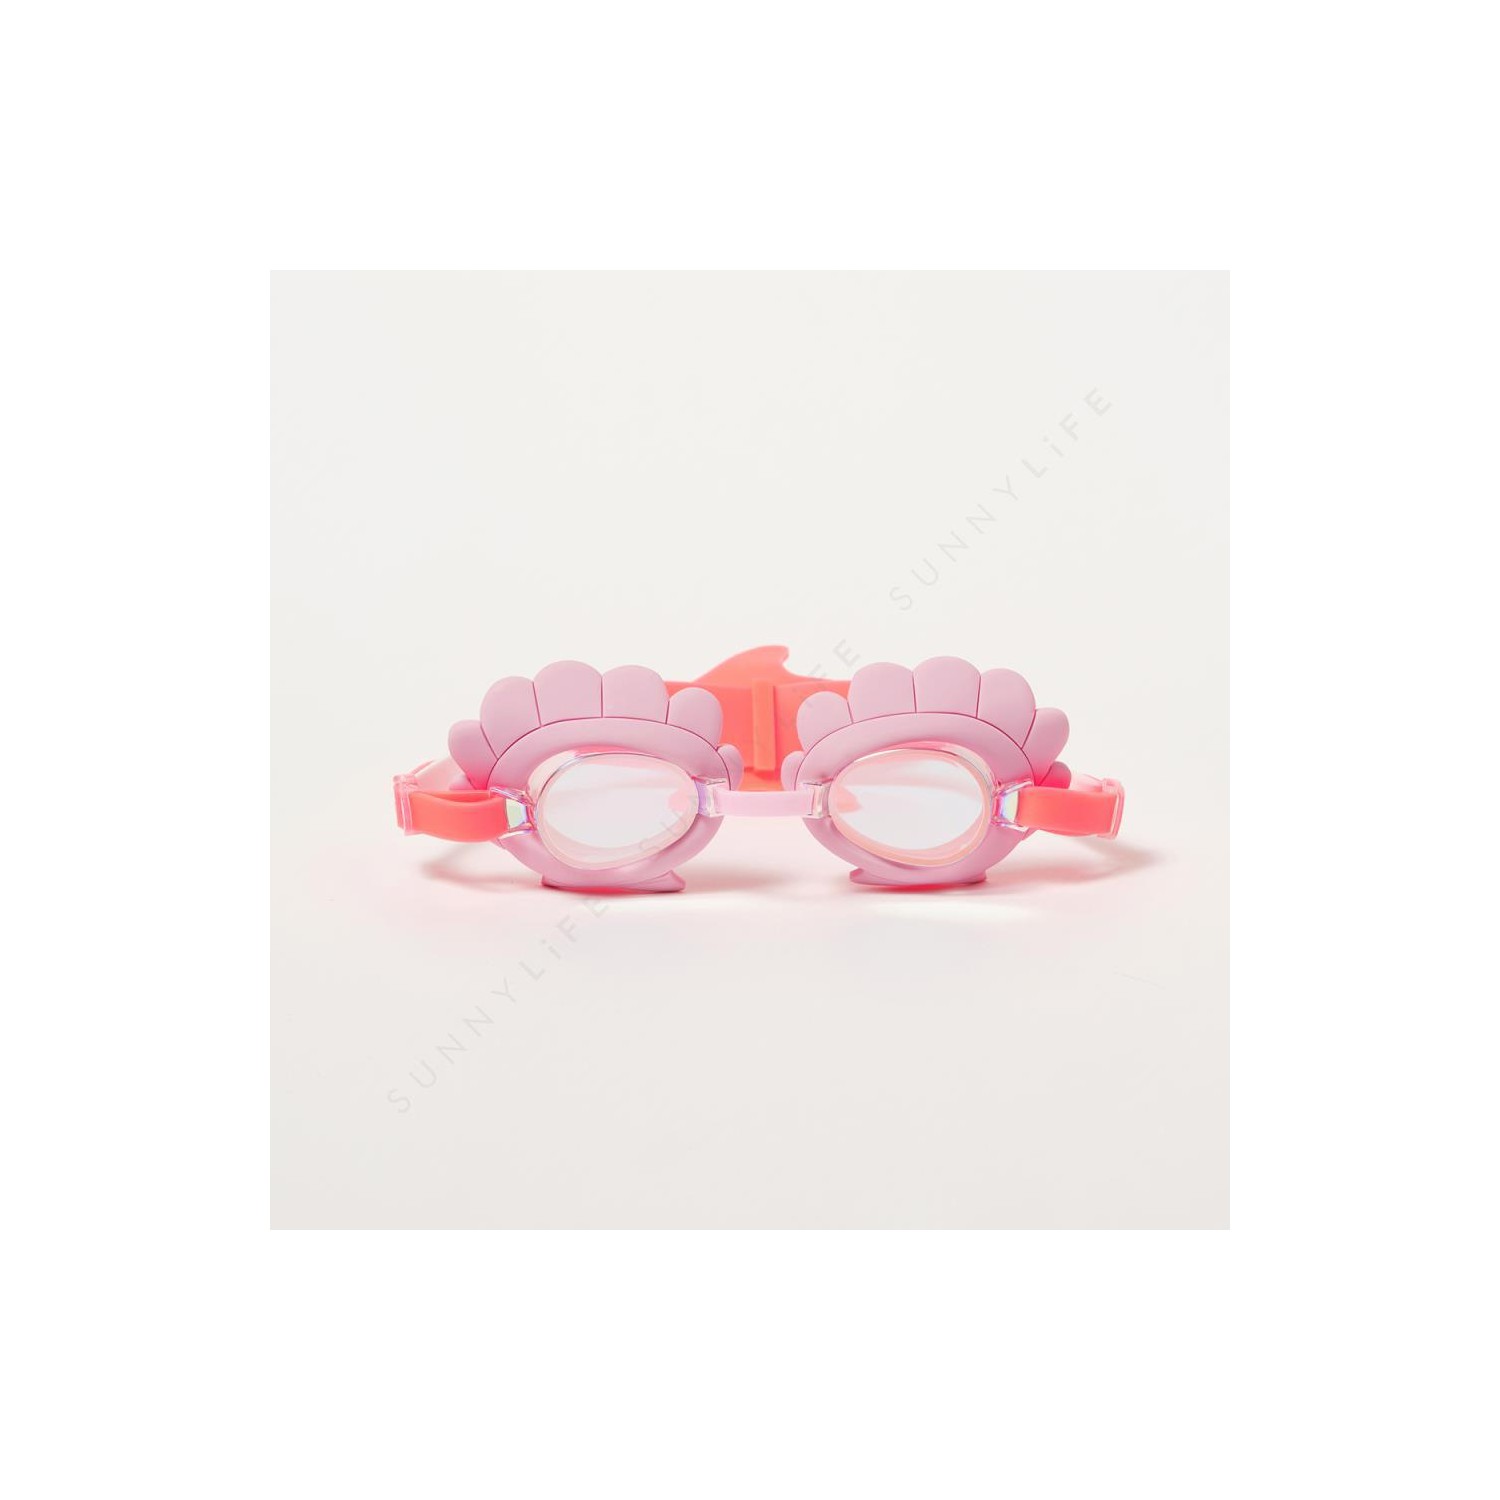 Melody the Mermaid Mini Swim Goggles Neon Strawber